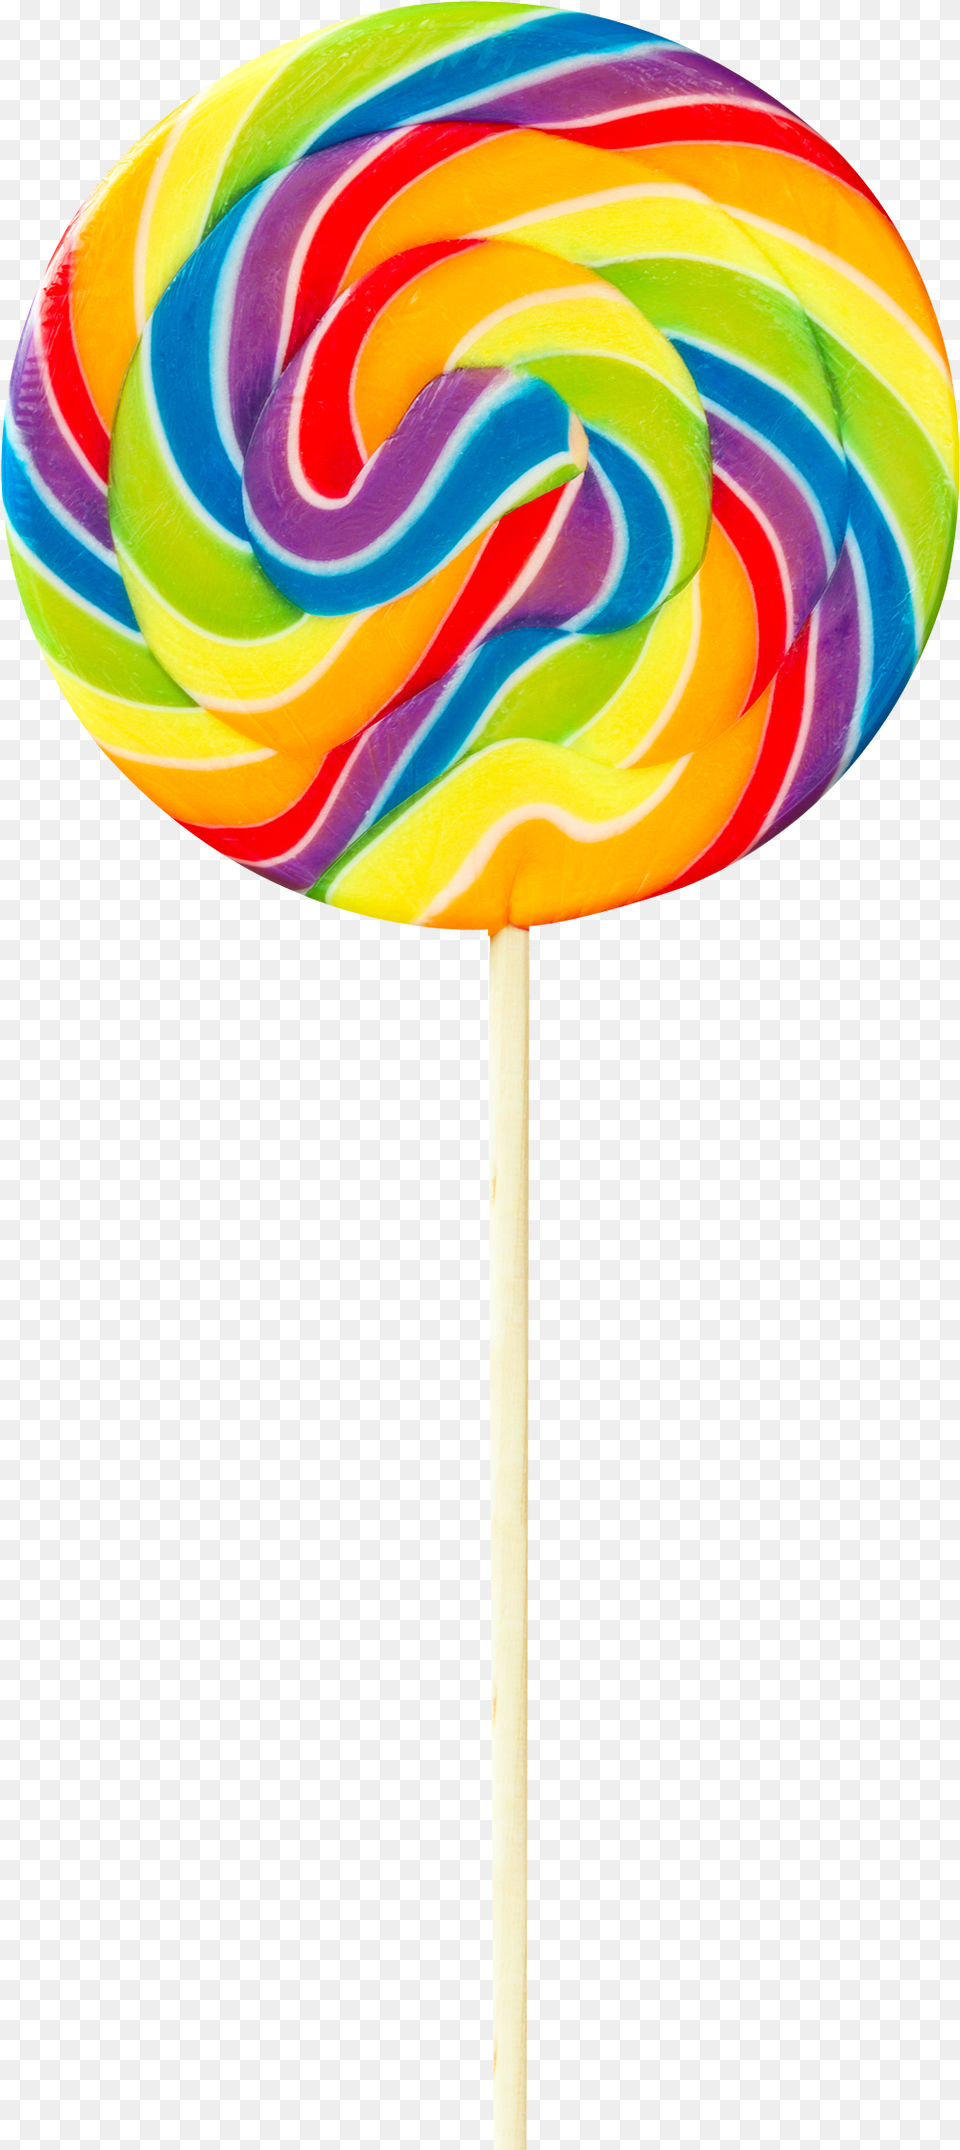 Swirl Lollipop Swirl Lollipop, Candy, Food, Sweets Free Png Download